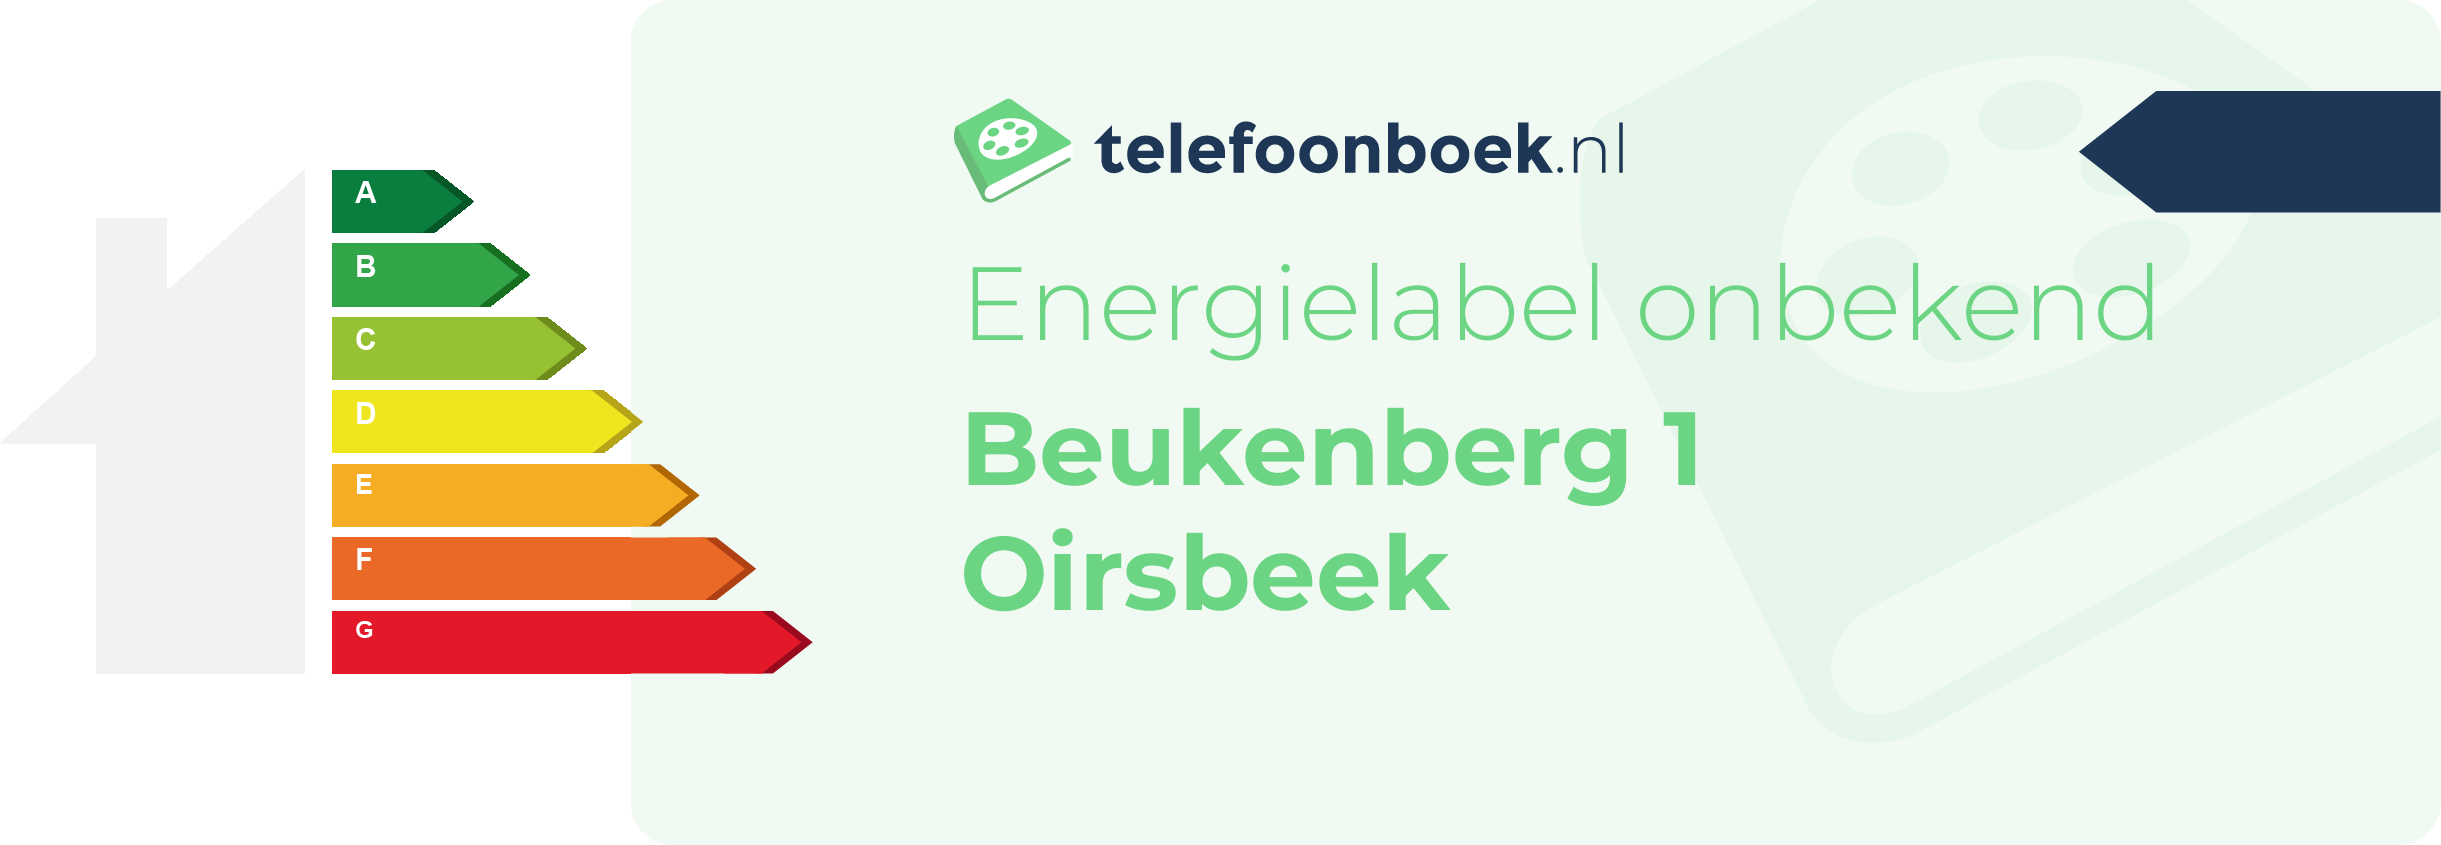 Energielabel Beukenberg 1 Oirsbeek